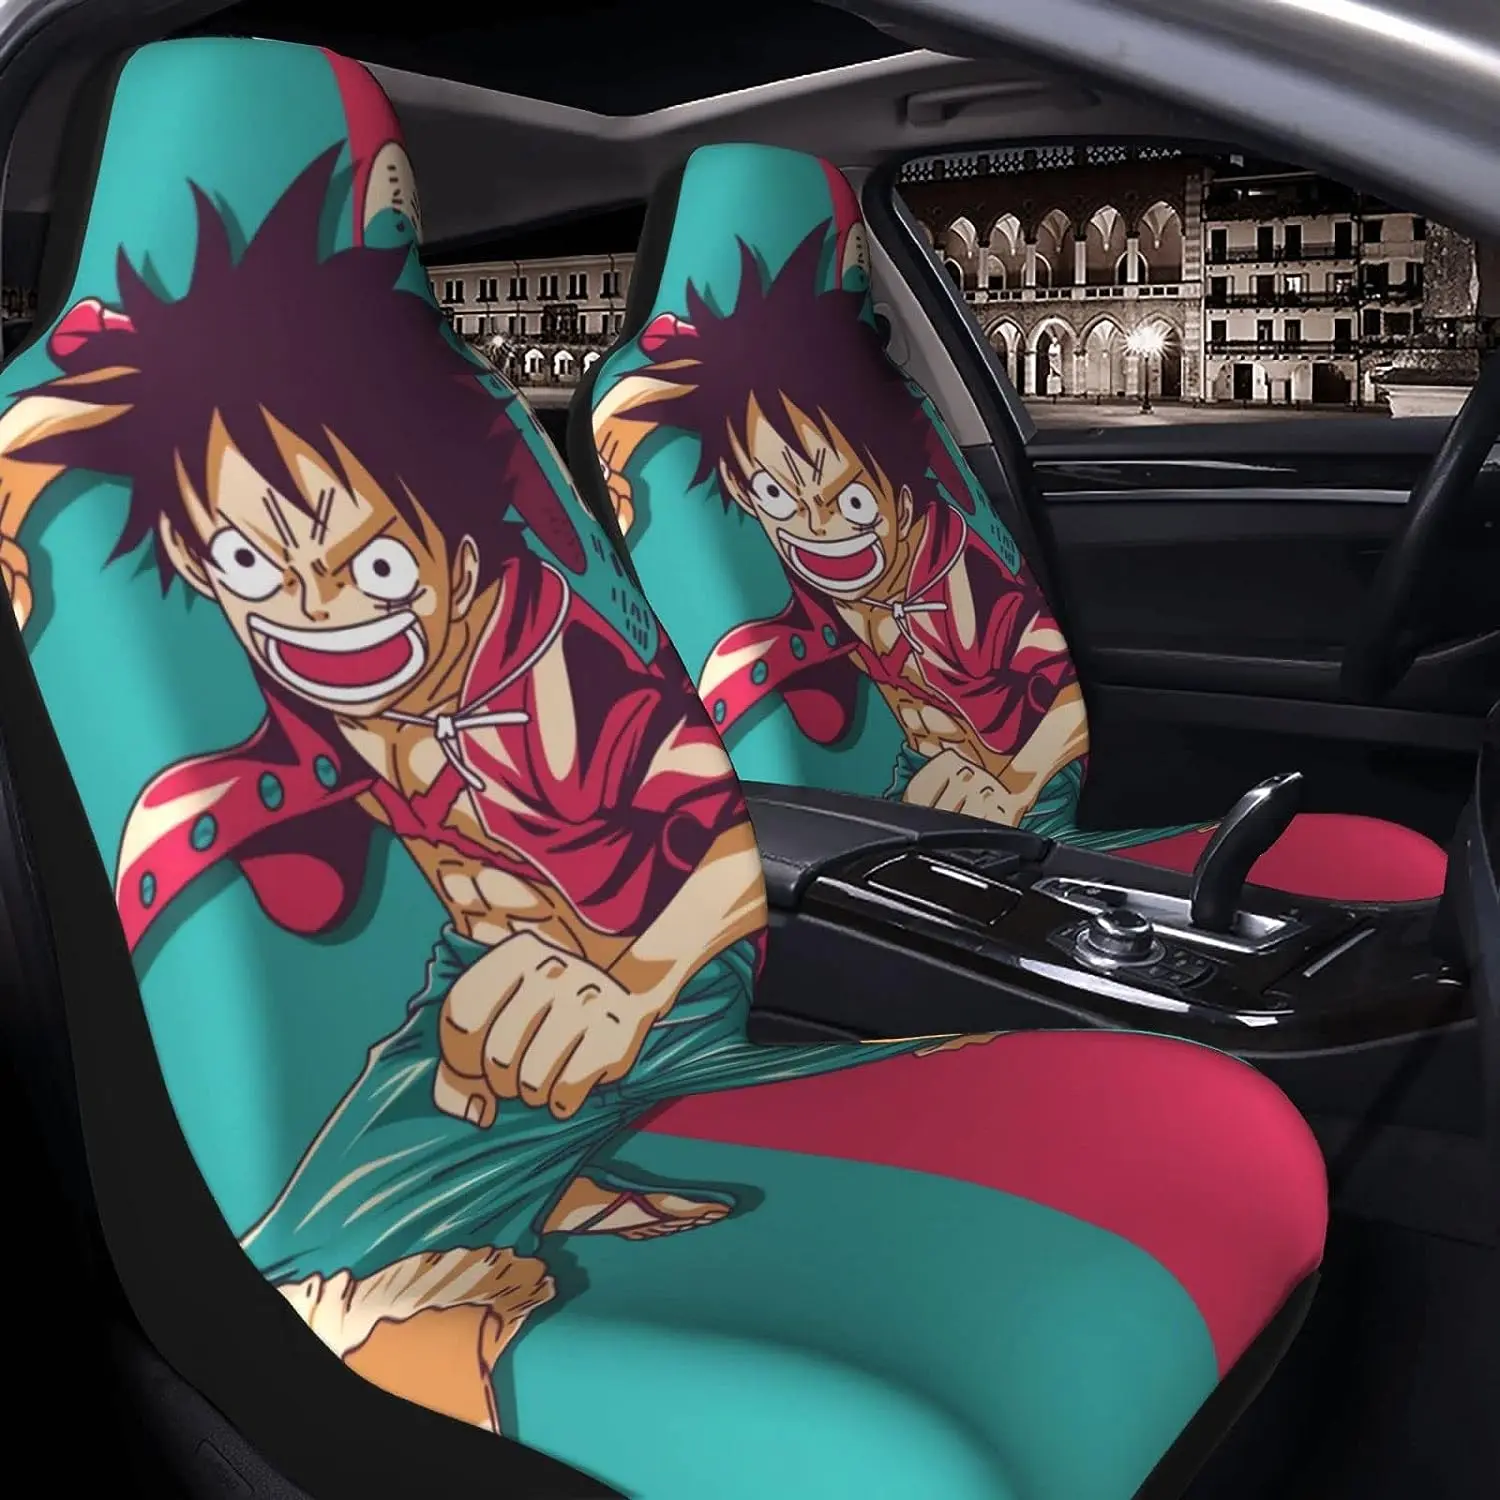 

Аниме Обезьяна D. Luffy пиратский автомобильный чехол на сиденье, универсальные автомобильные подушки, протектор автомобильных сидений, чехлы для автомобильных сидений подходят для большинства автомобилей